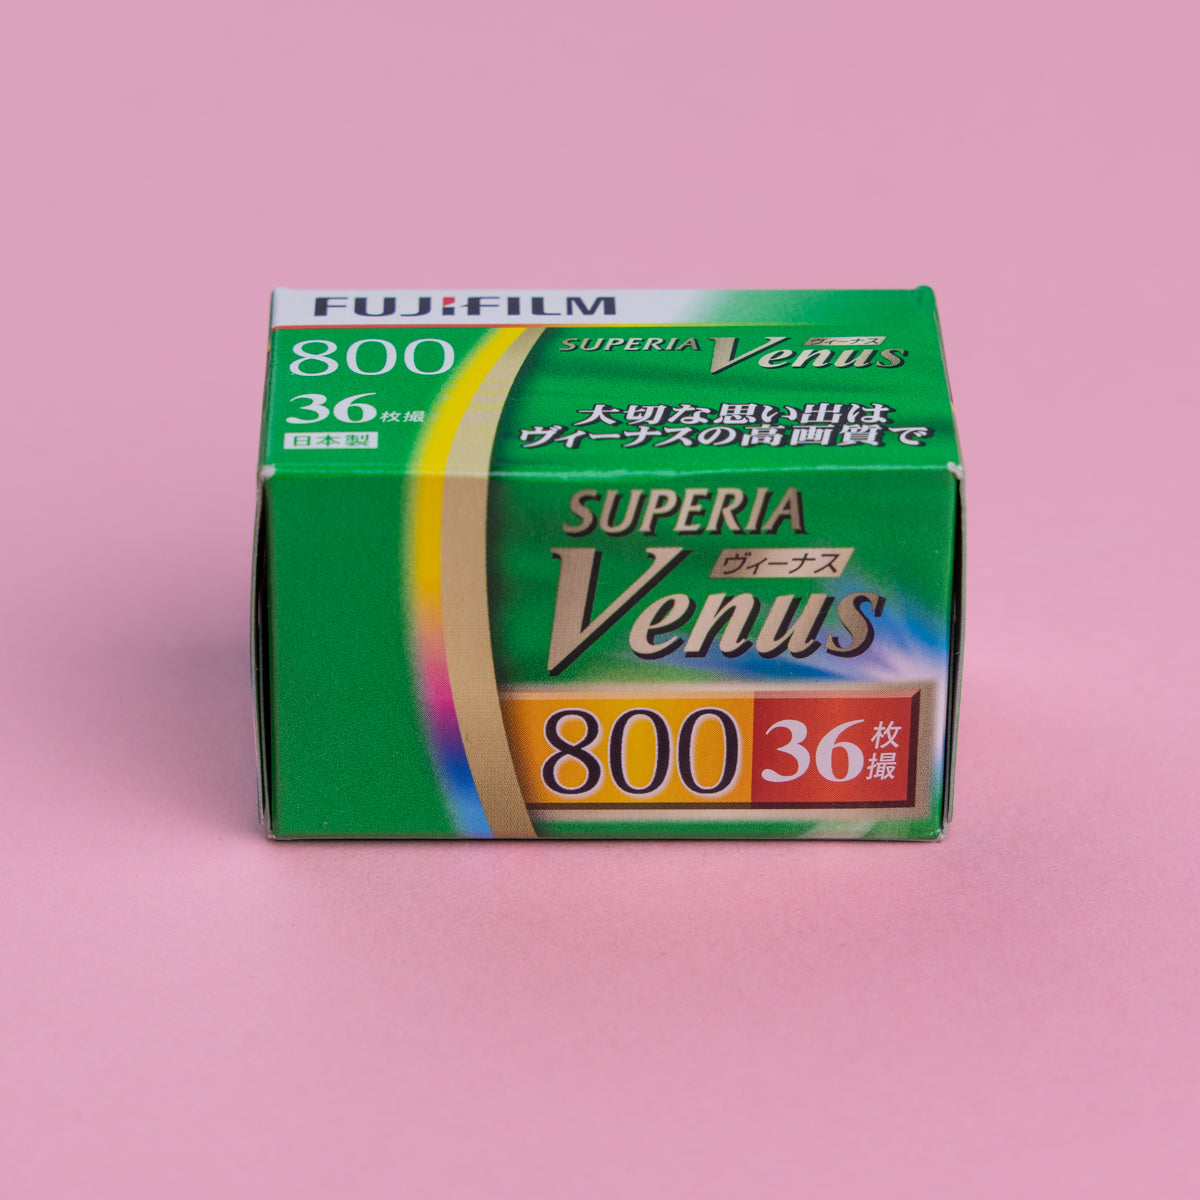 Fujifilm Superia Venus 800 35mm 36 exp (Expiry 02/2021)